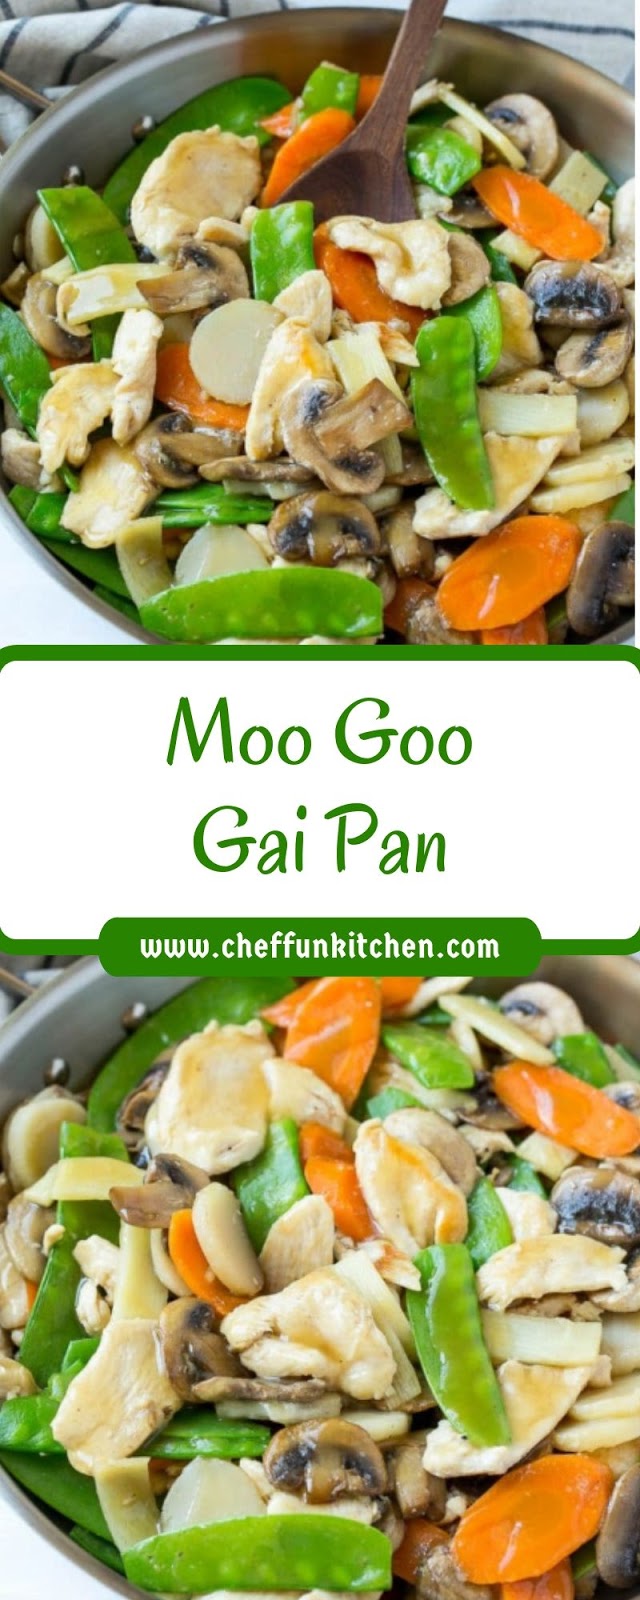 Moo Goo Gai Pan